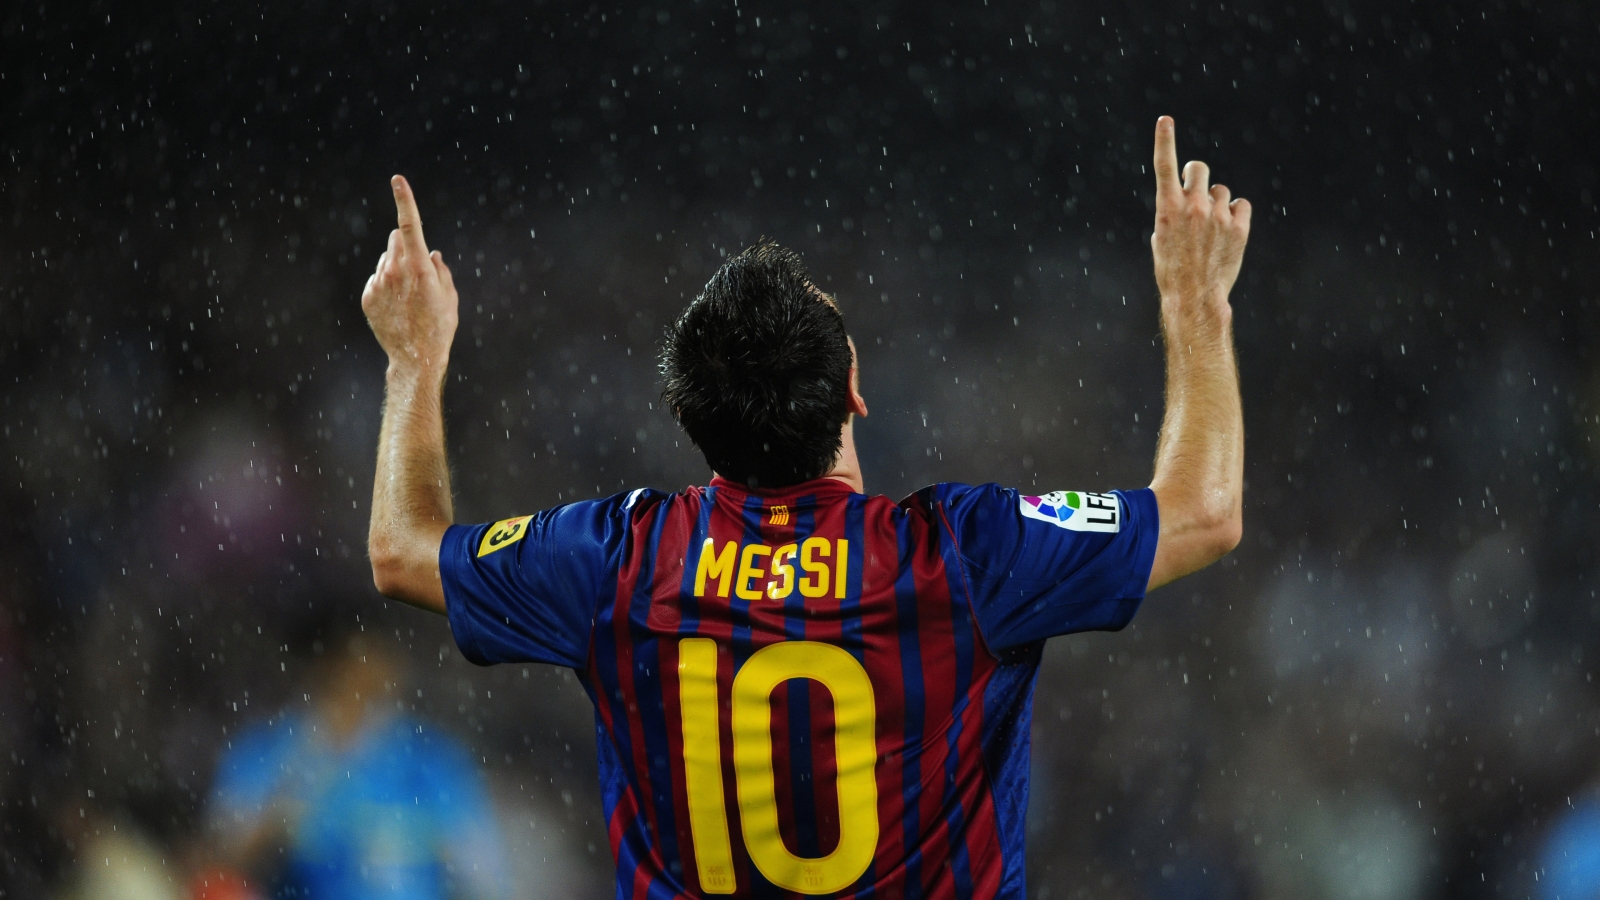 Lionel Messi in Rain for 1600 x 900 HDTV resolution